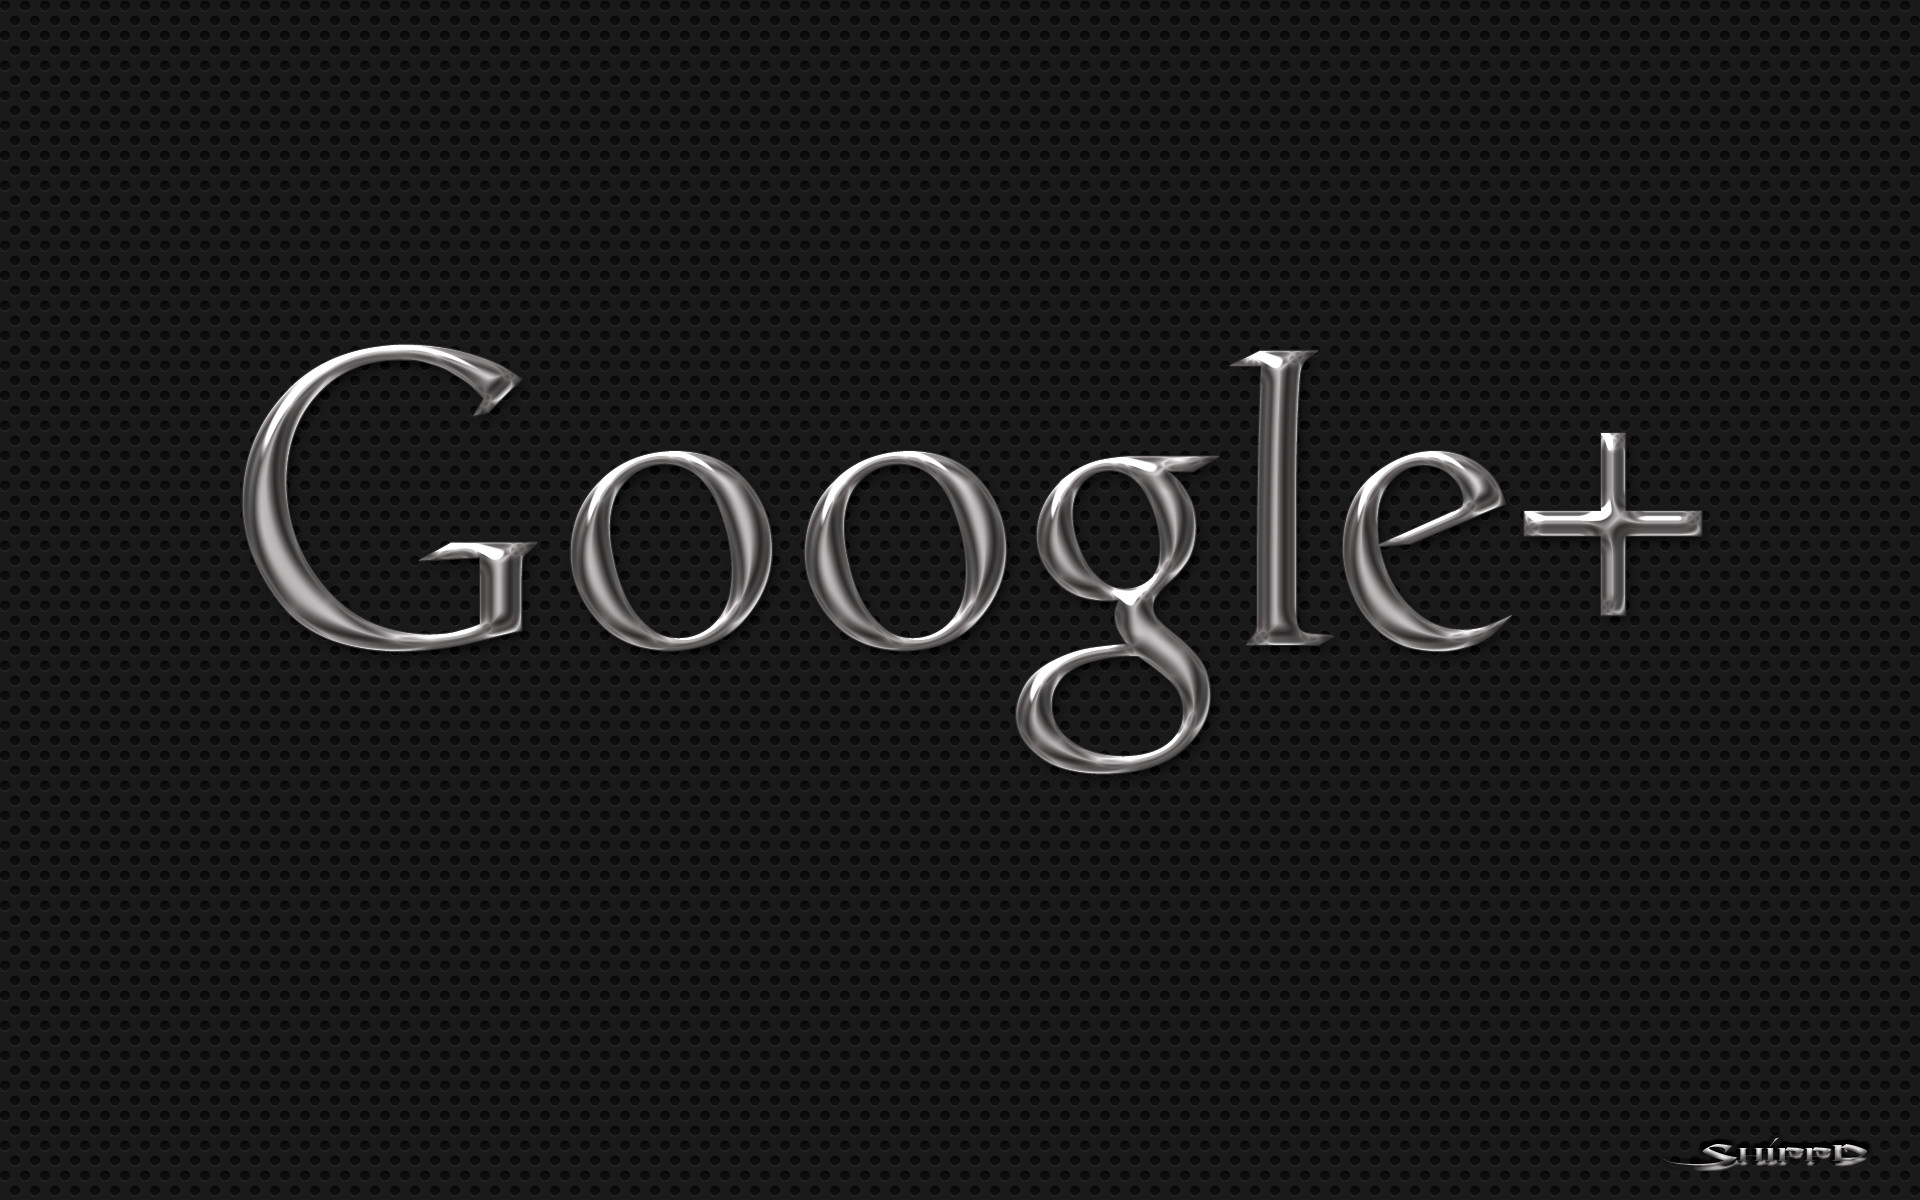 Google Desktop Background Image